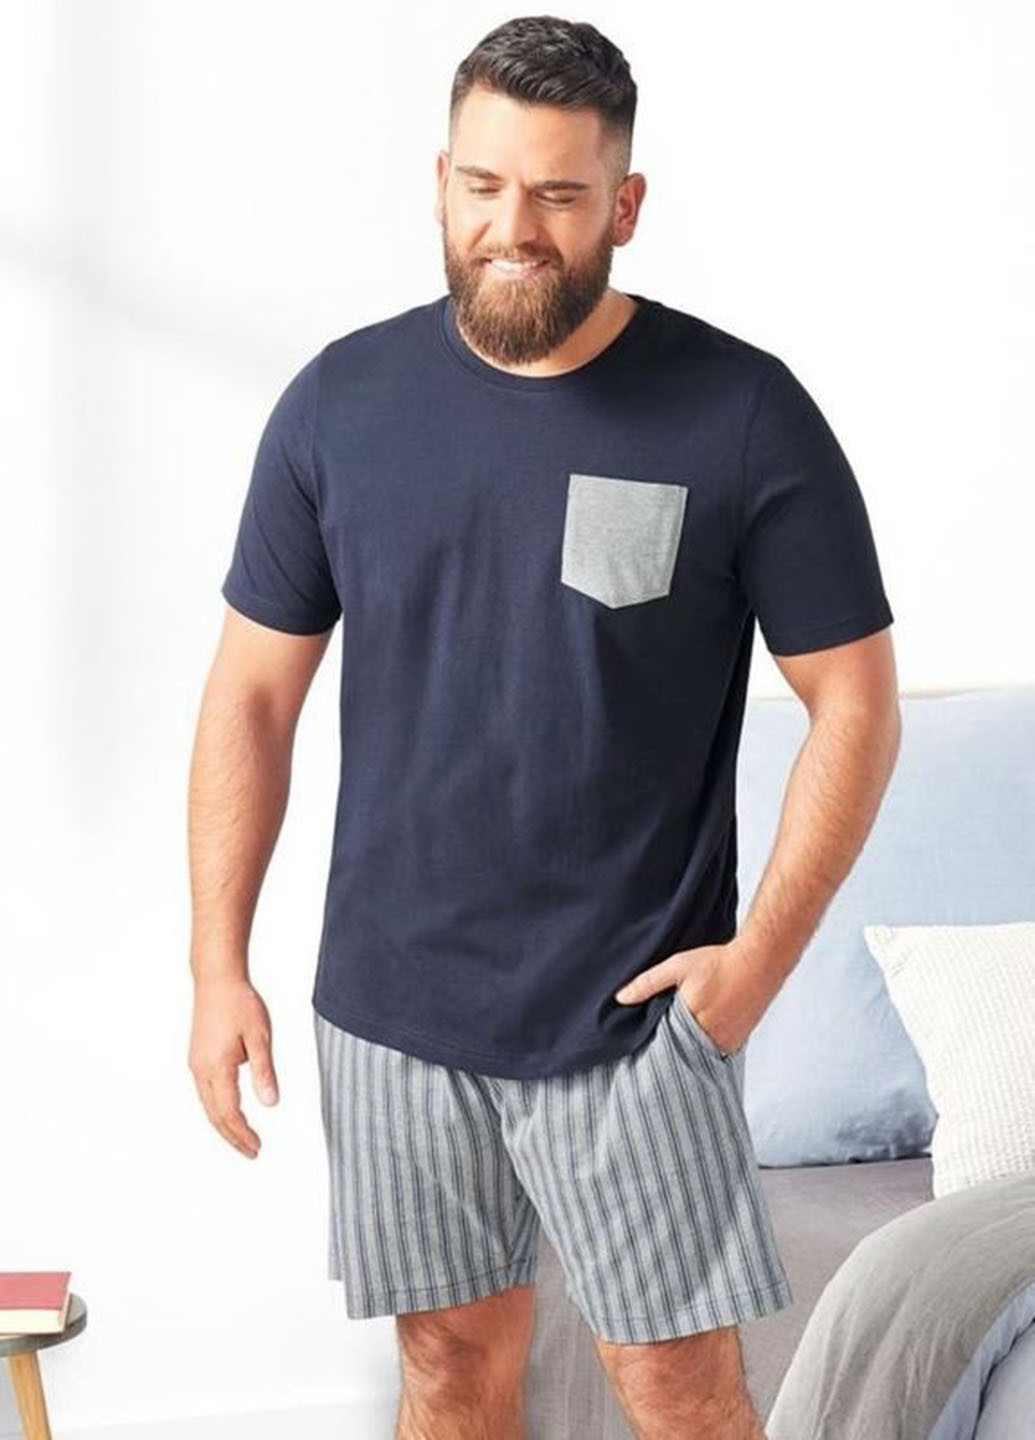 Піжама (футболка, шорти) Livergy футболка + шорти смужка сіро-синя домашня бавовна